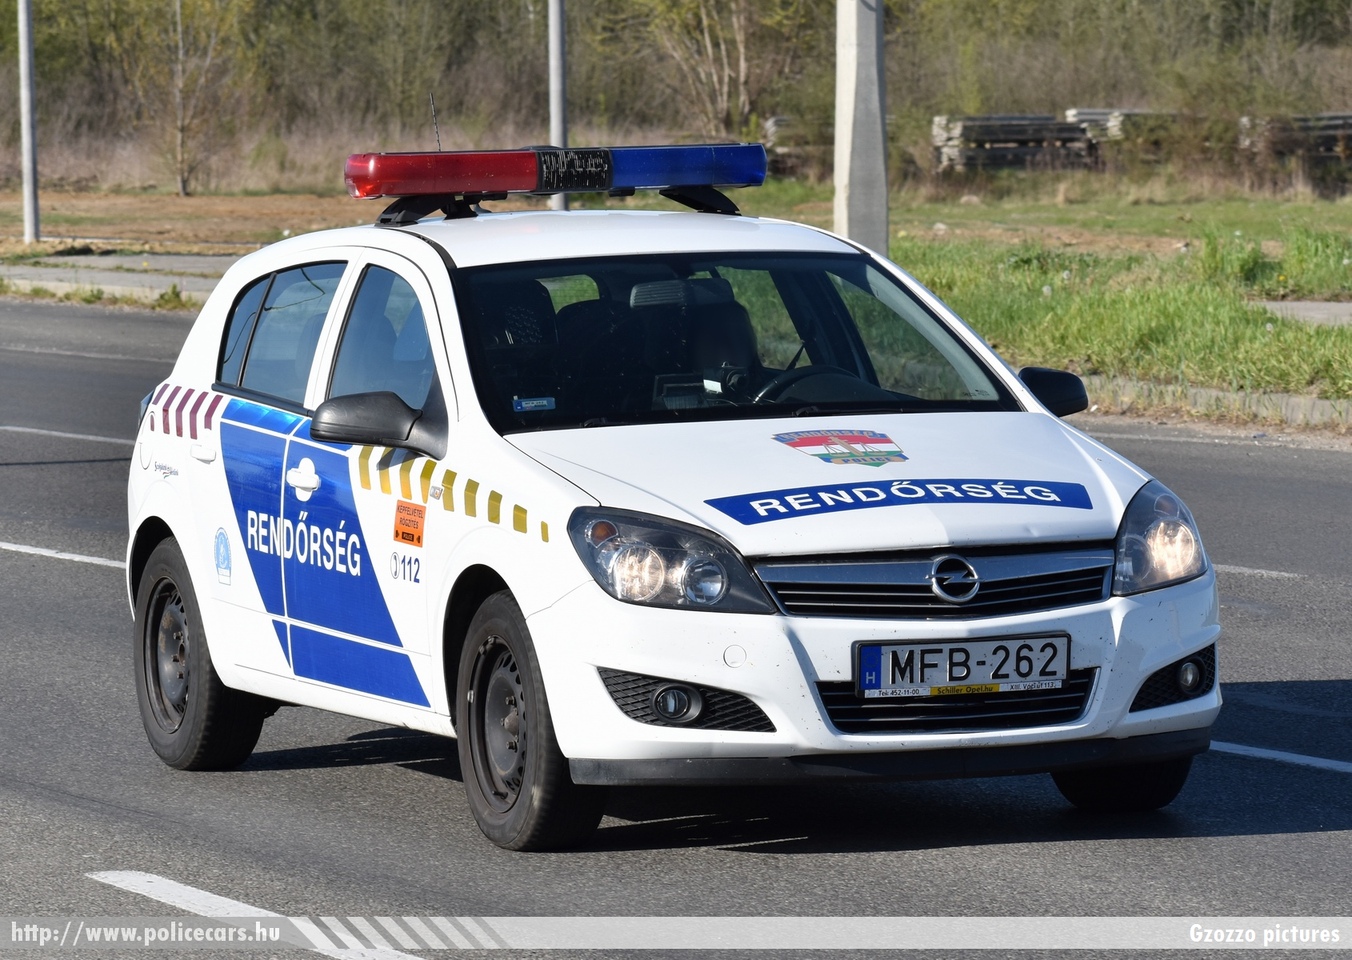 Opel Astra H, fotó: Gzozzo pictures
Keywords: magyar Magyarország rendőr rendőrautó rendőrség Hungary hungarian police policecar MFB-262